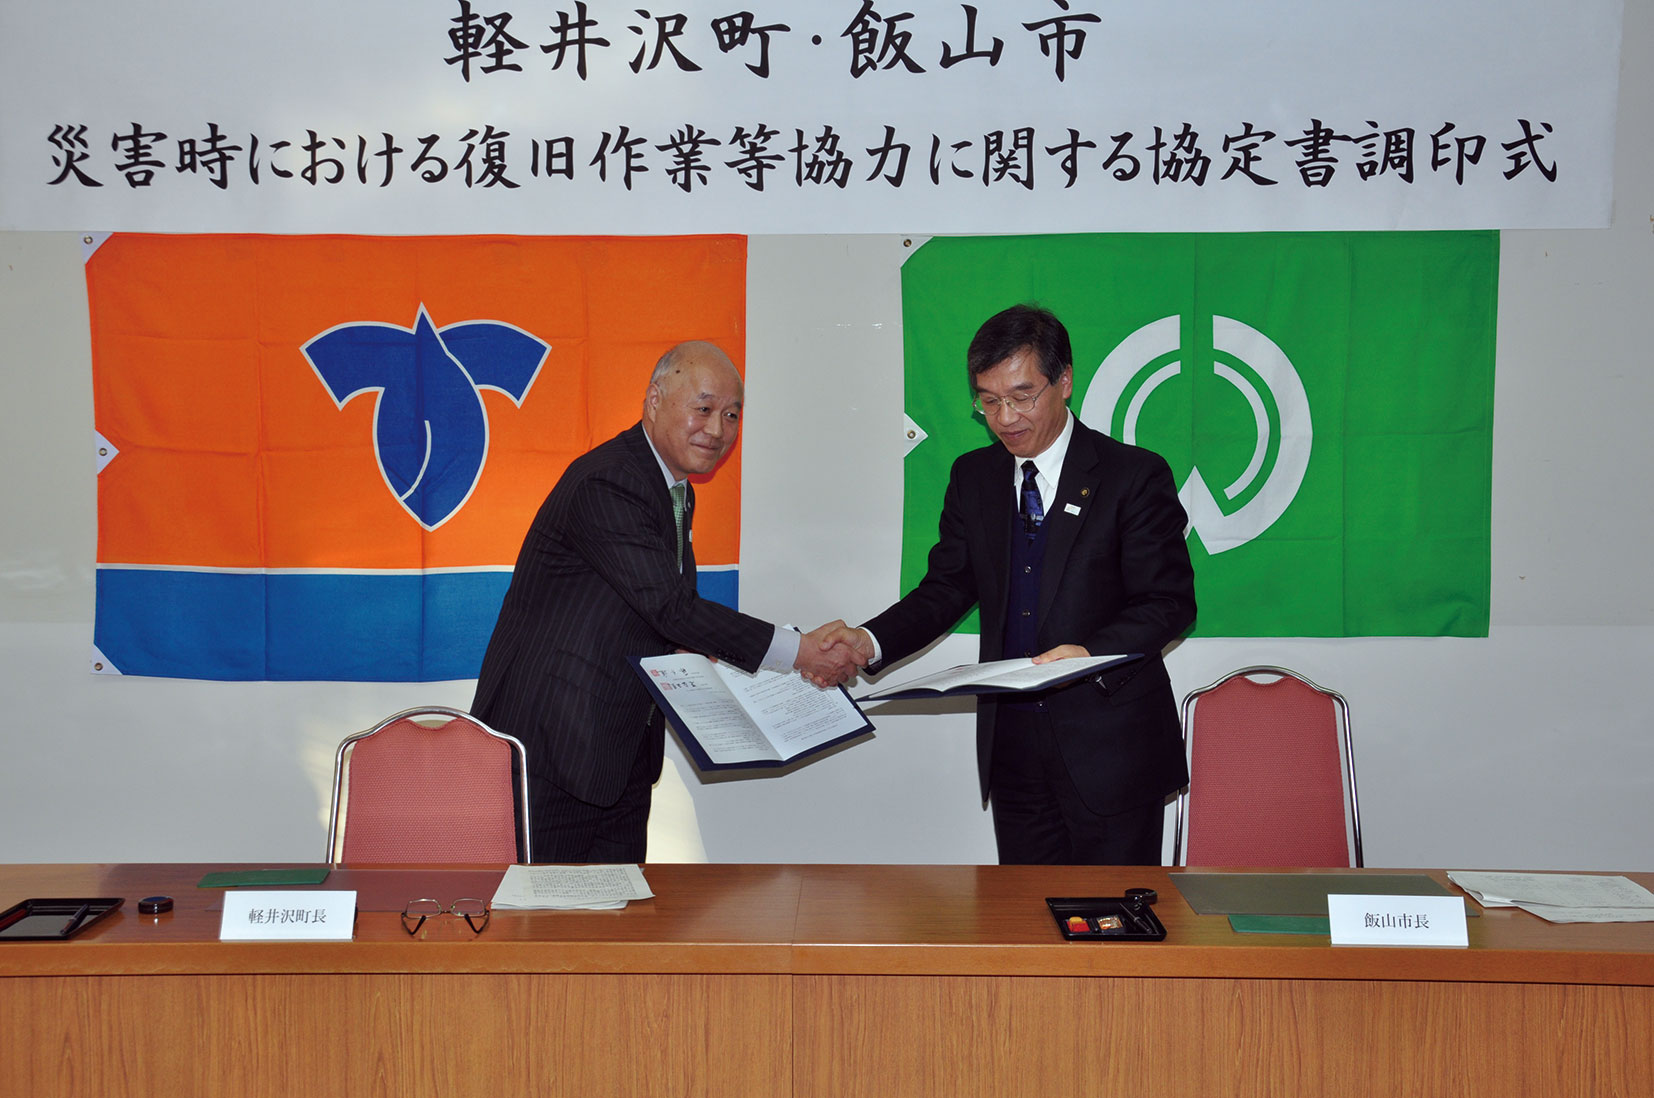 軽井沢町と災害時における復旧作業等協力に関する協定書を締結